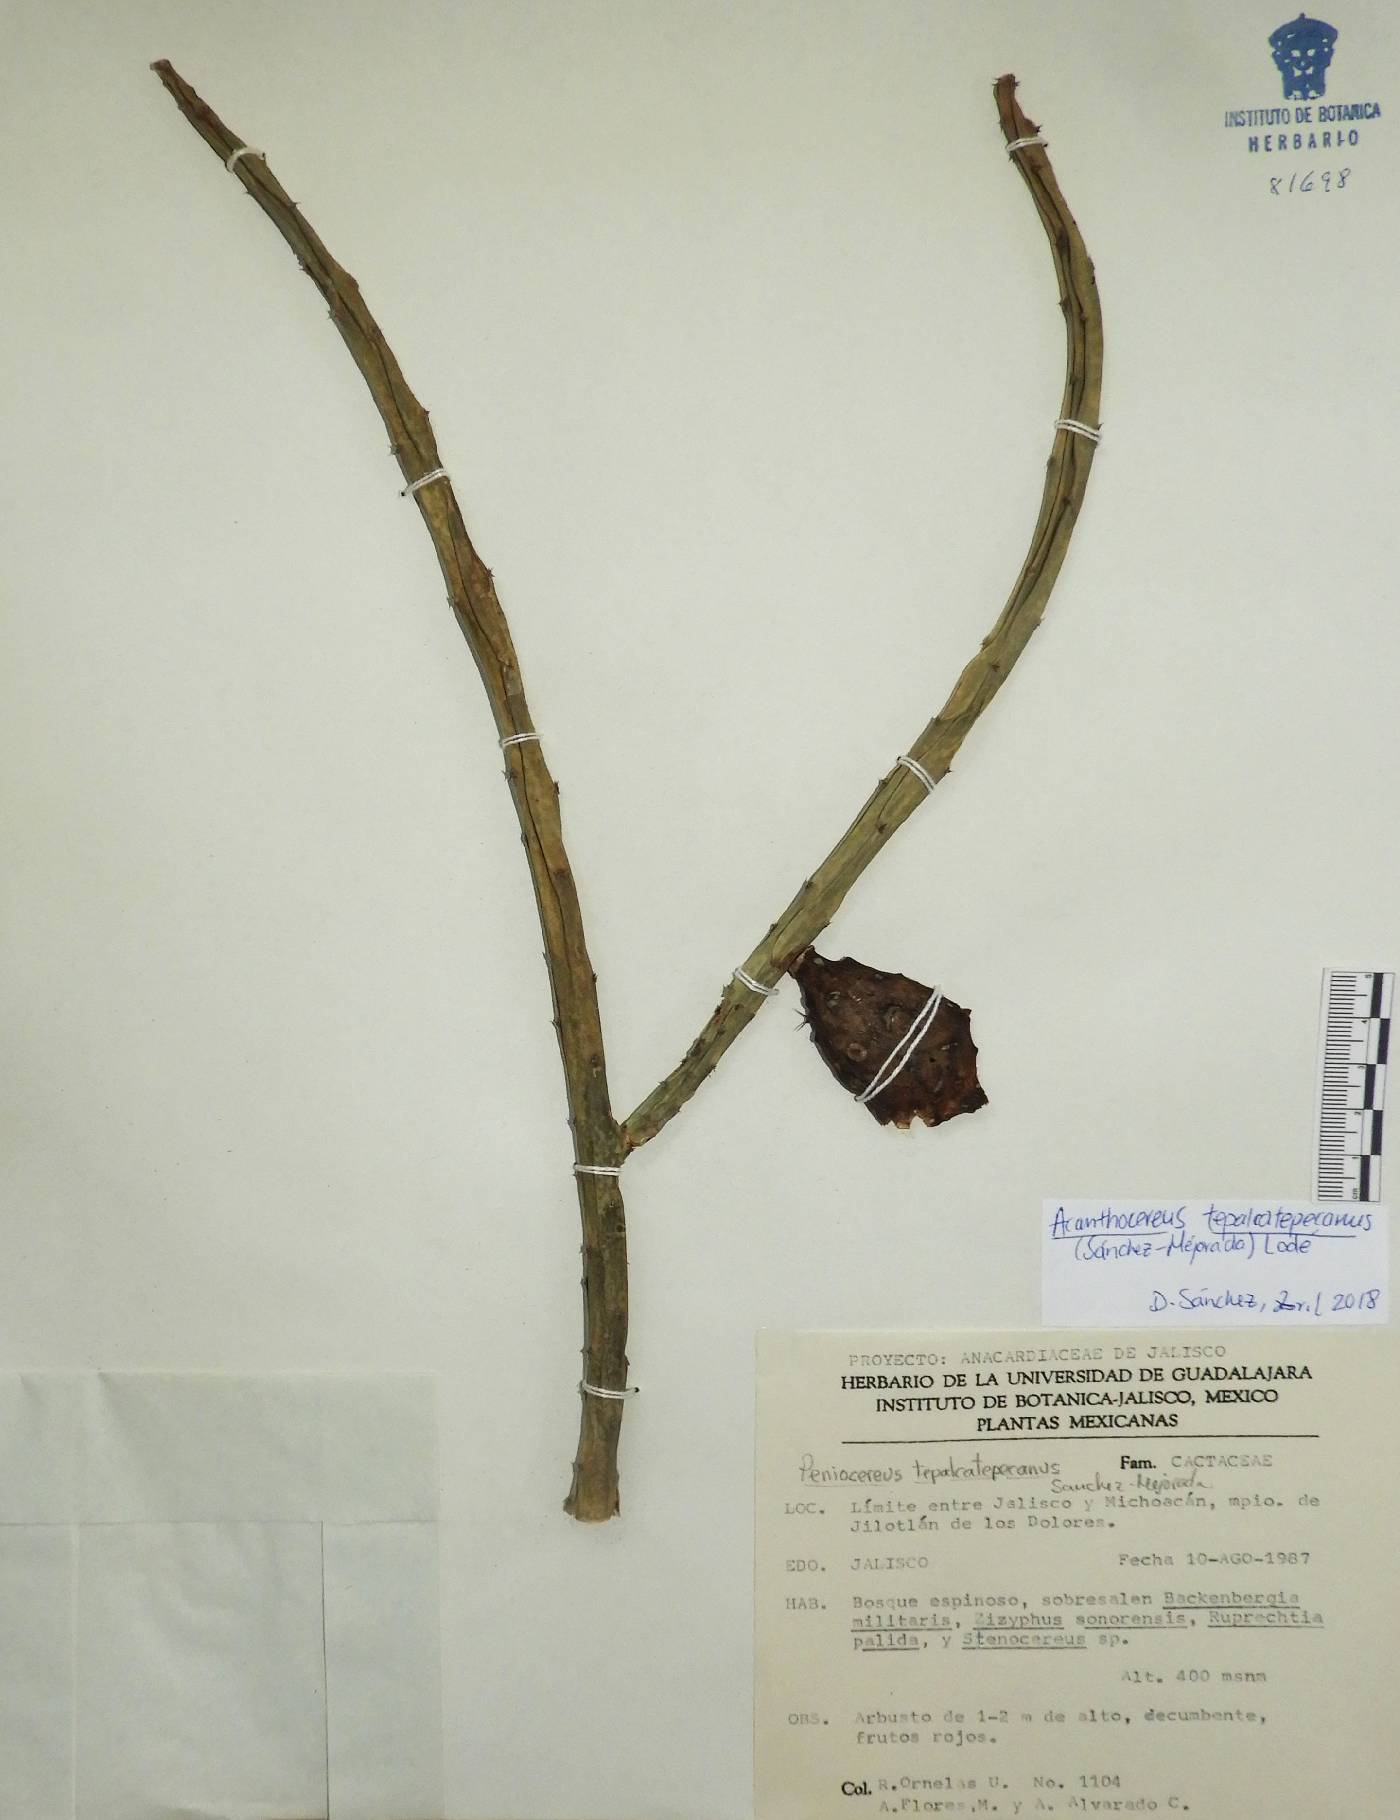 Acanthocereus tepalcatepecanus image